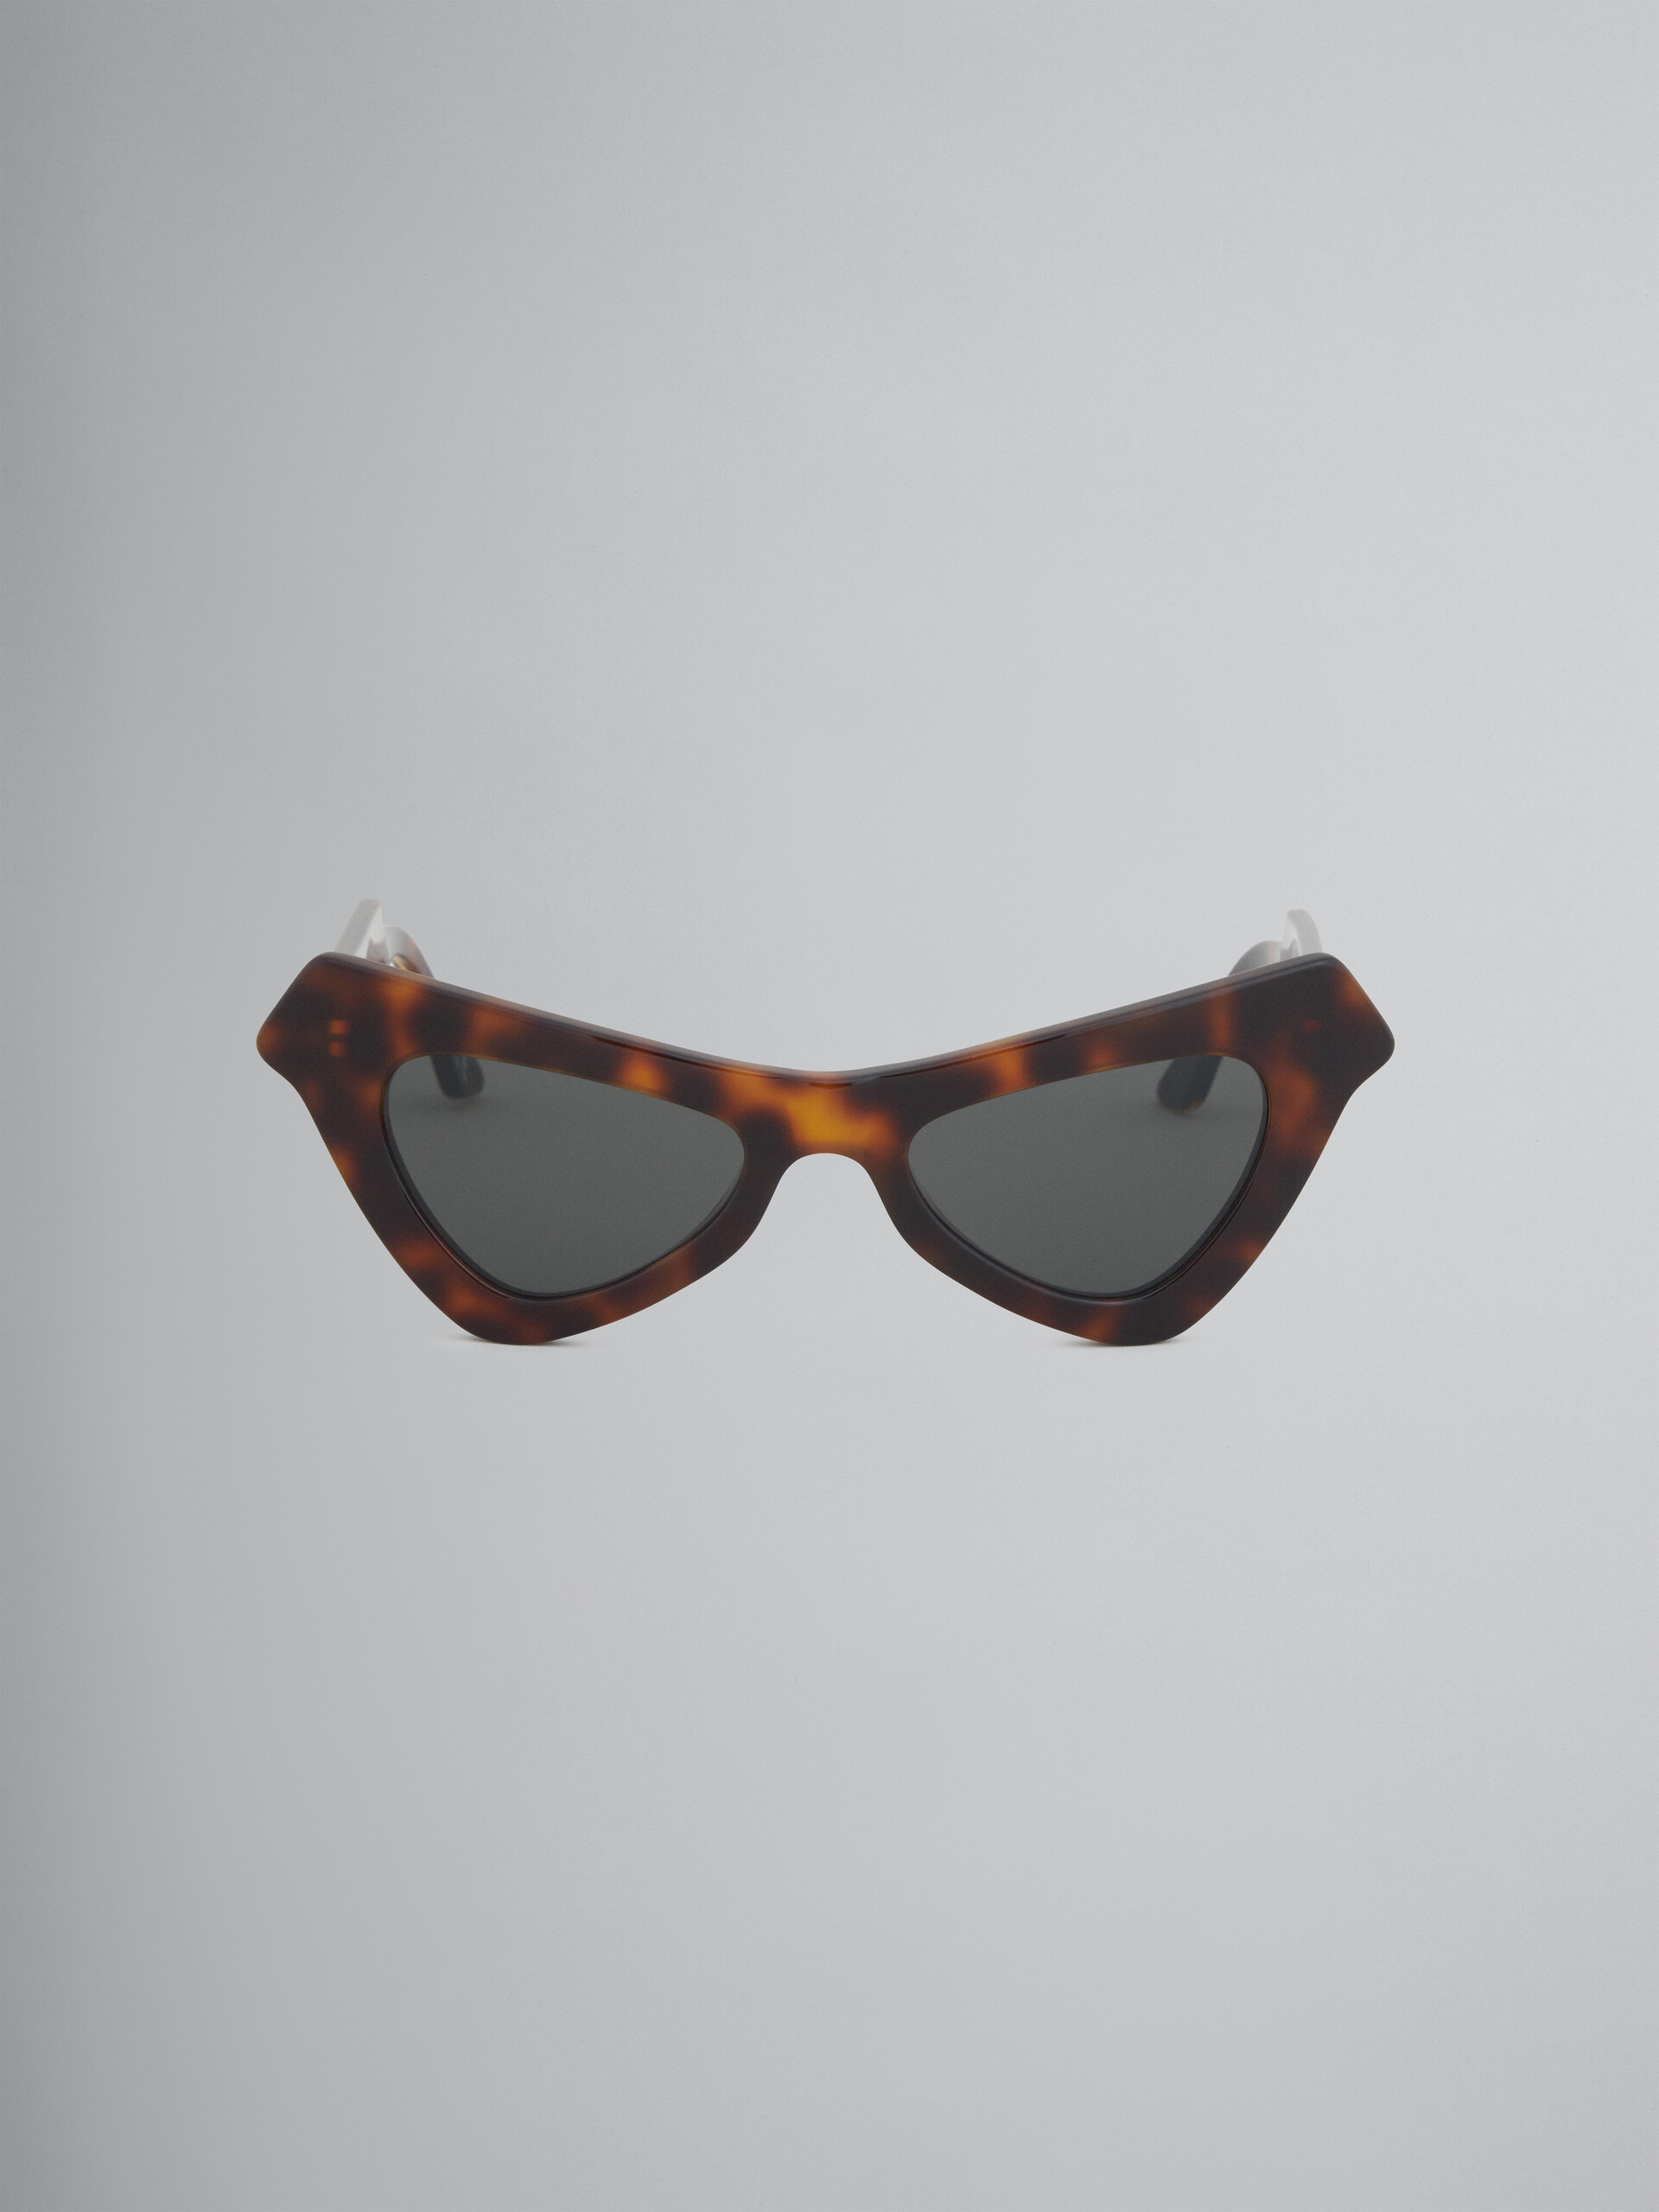 Tortoiseshell acetate FAIRY POOL sunglasses - Optical - Image 1